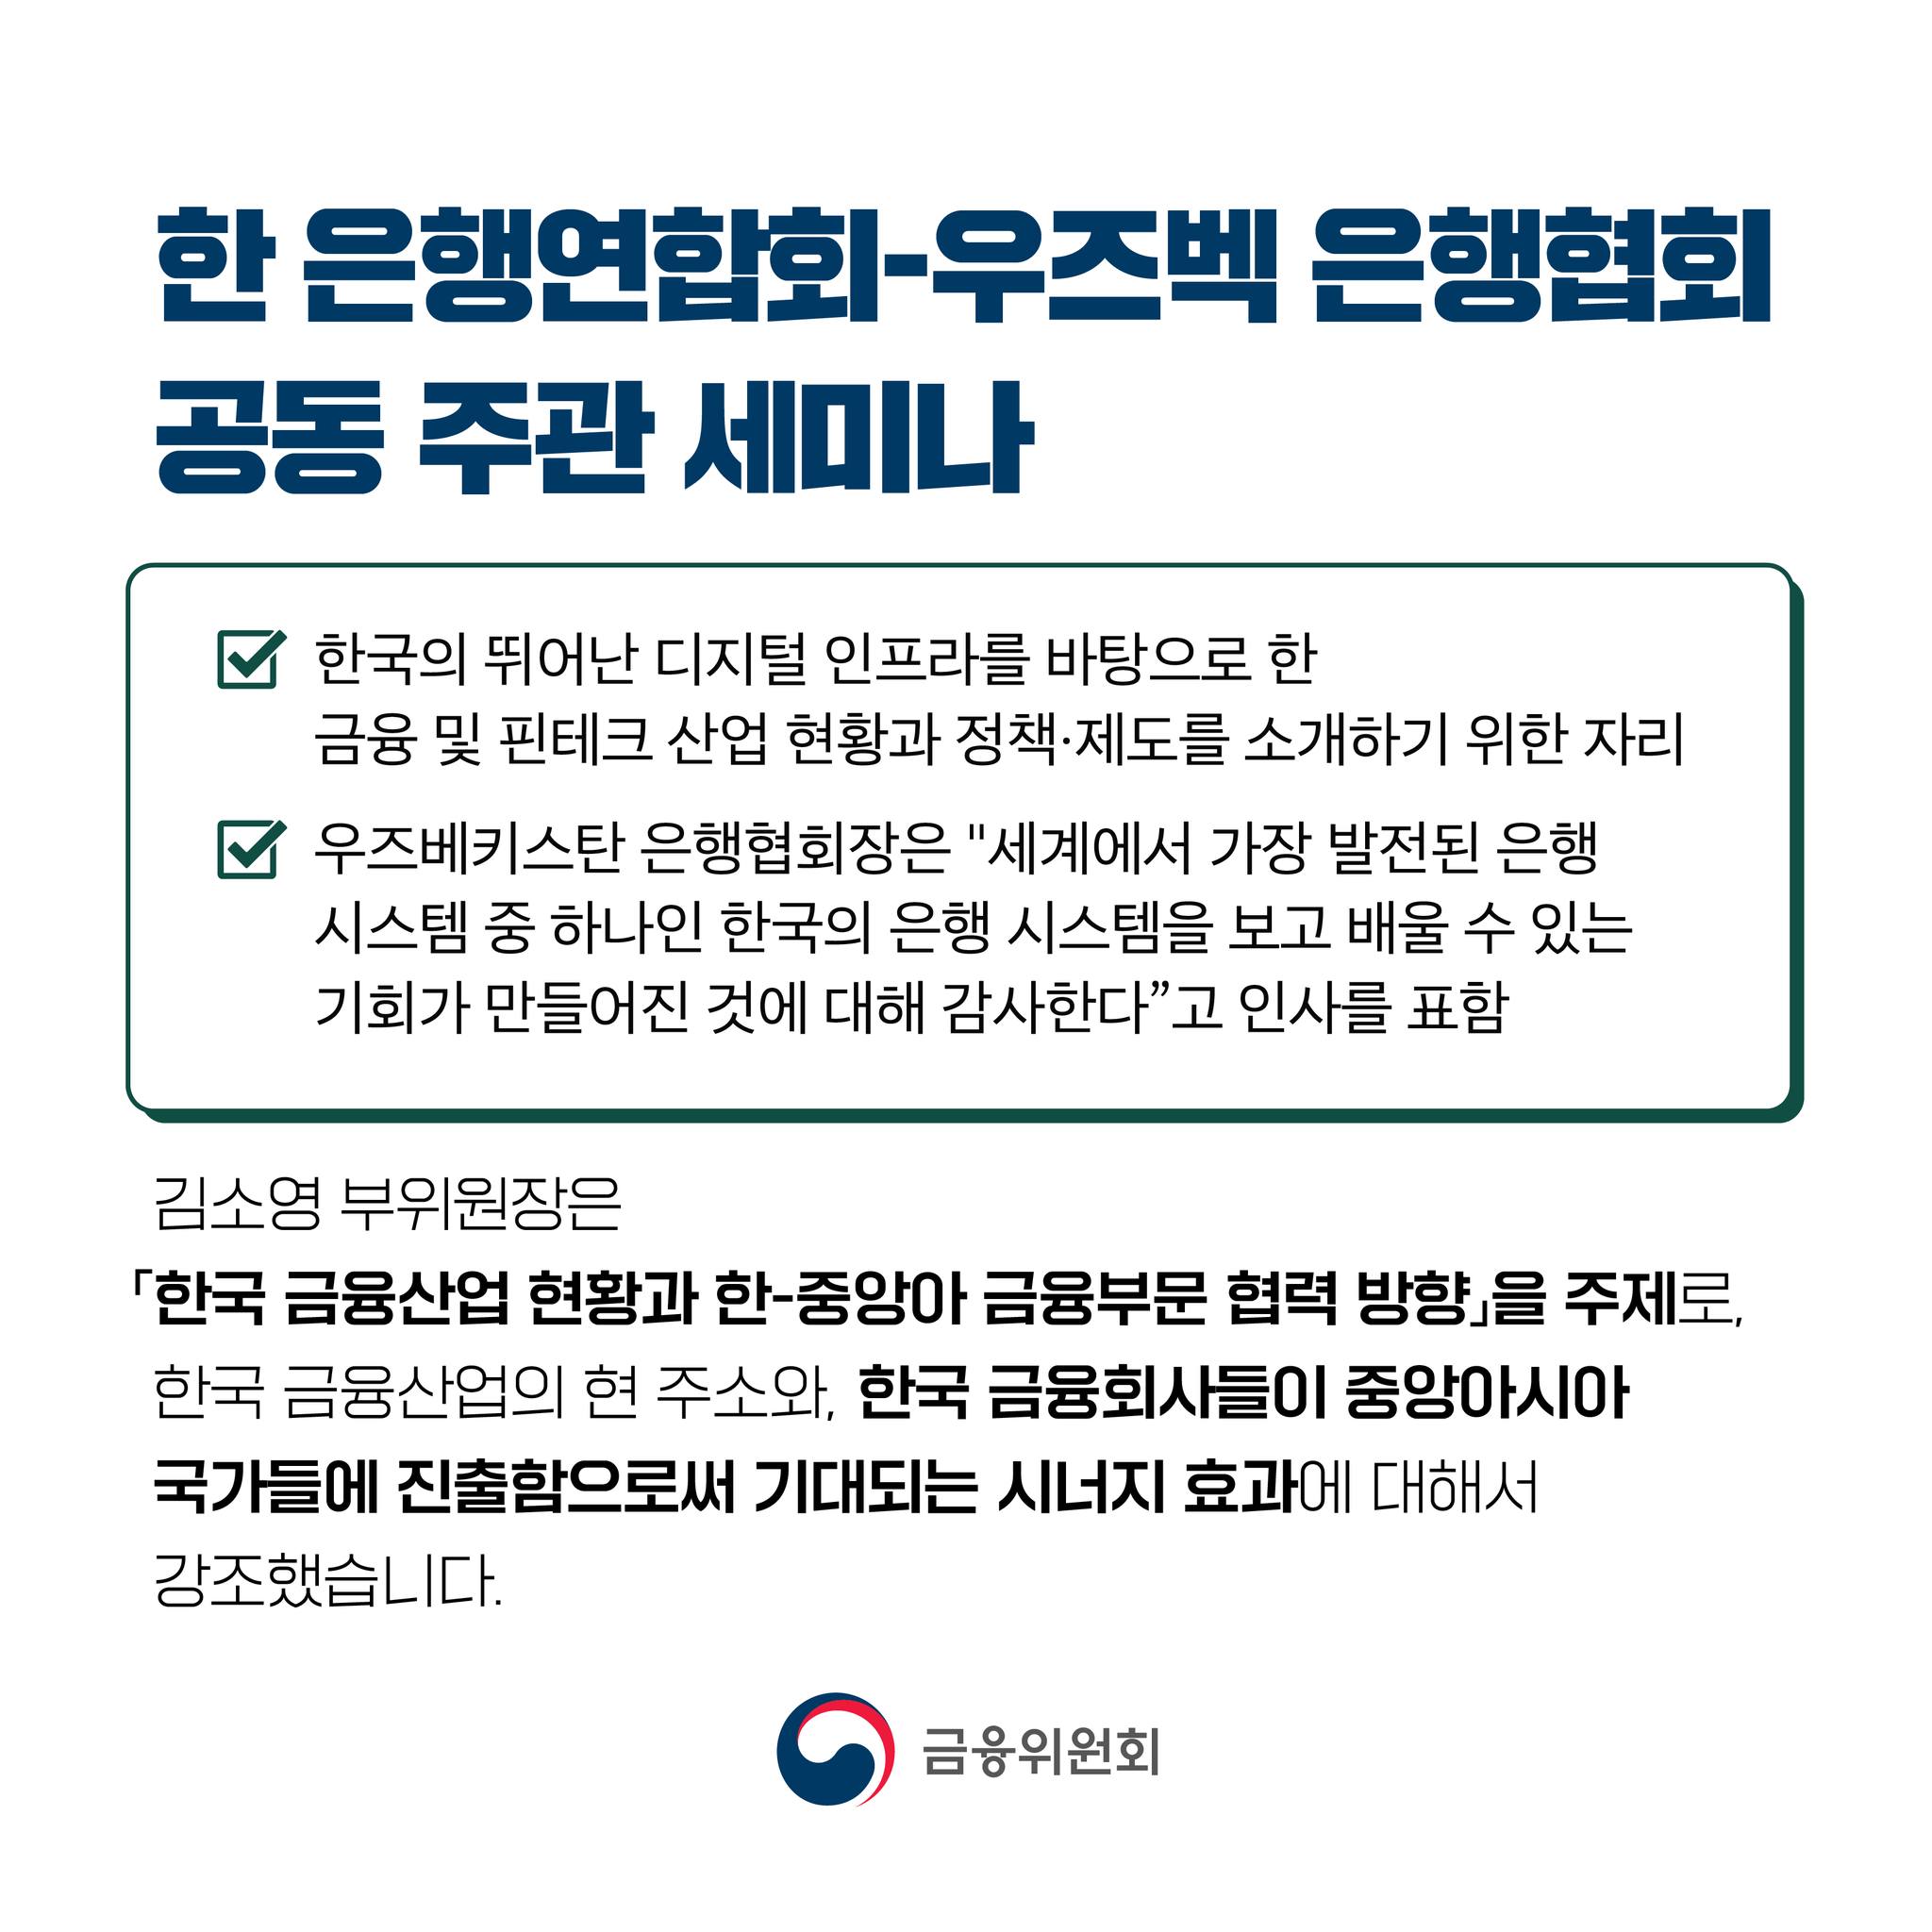 한 은행연합회-우즈벡 은행협회 공동 주관 세미나  - 한국의 뛰어난 디지털 인프라를 바탕으로 한 금융 및 핀테크 산업 현황과 정책·제도를 소개하기 위한 자리 - 우즈베키스탄 은행협회장은 세계에서 가장 발전된 은행 시스템 중 하나인 한국의 은행 시스템을 보고 배울 수 있는 기회가 만들어진 것에 대해 감사한다고 인사를 표함. 김소영 부위원장은 「한국 금융산업 현황과 한-중앙아 금융부문 협력 방향」을 주제로, 한국 금융산업의 현 주소와, 한국 금융회사들이 중앙아시아 국가들에 진출함으로써 기대되는 시너지 효과에 대해서 강조했습니다.